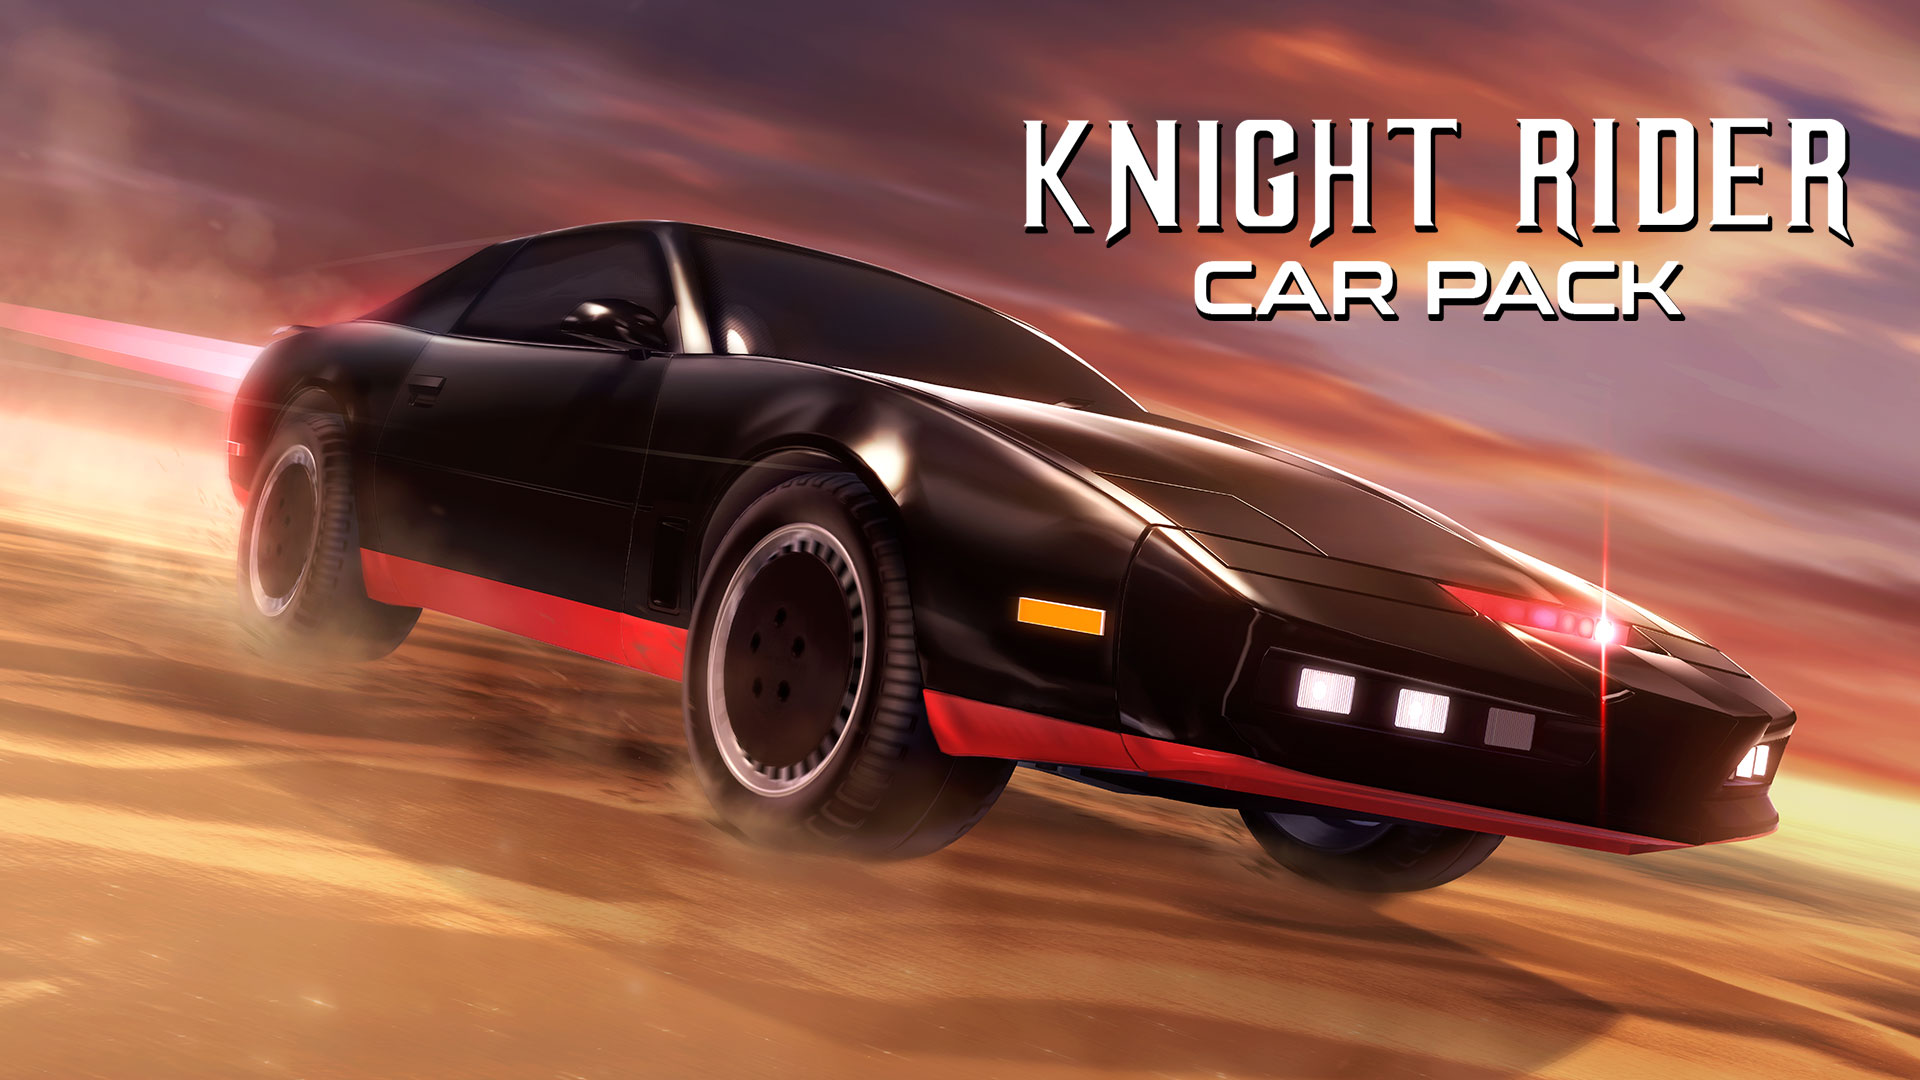 Knight Rider - K.I.T.T.